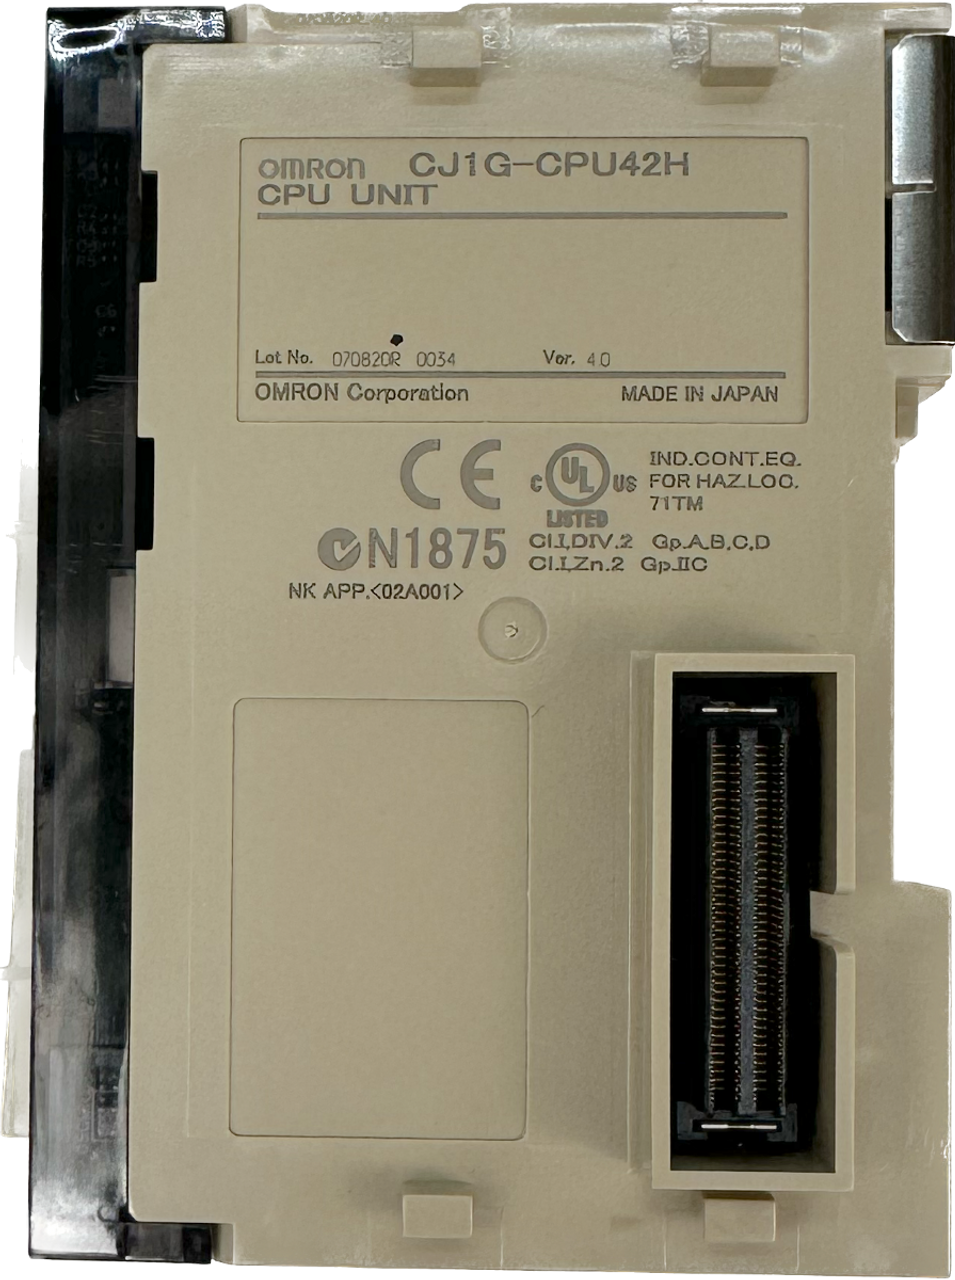 Omron CJ1G-CPU42H CPU Unit